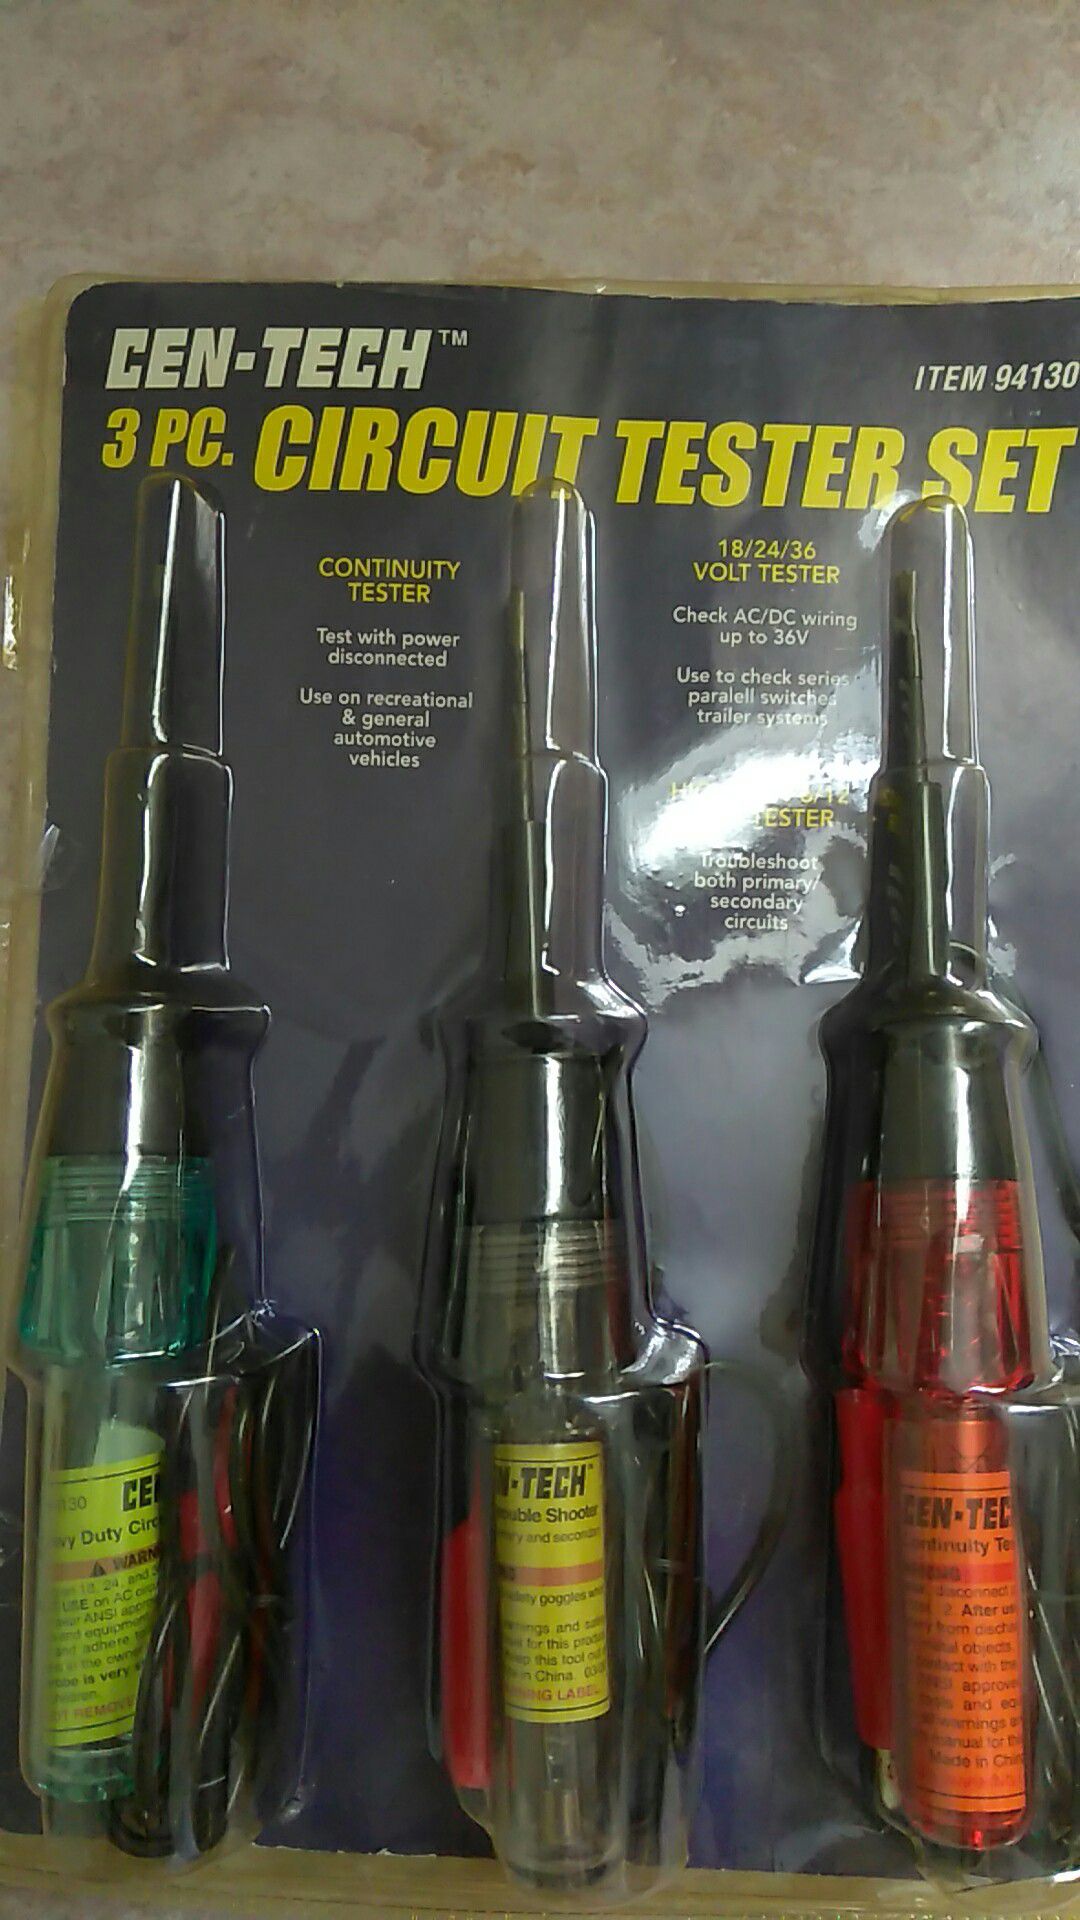 3 pc. circuit tester set